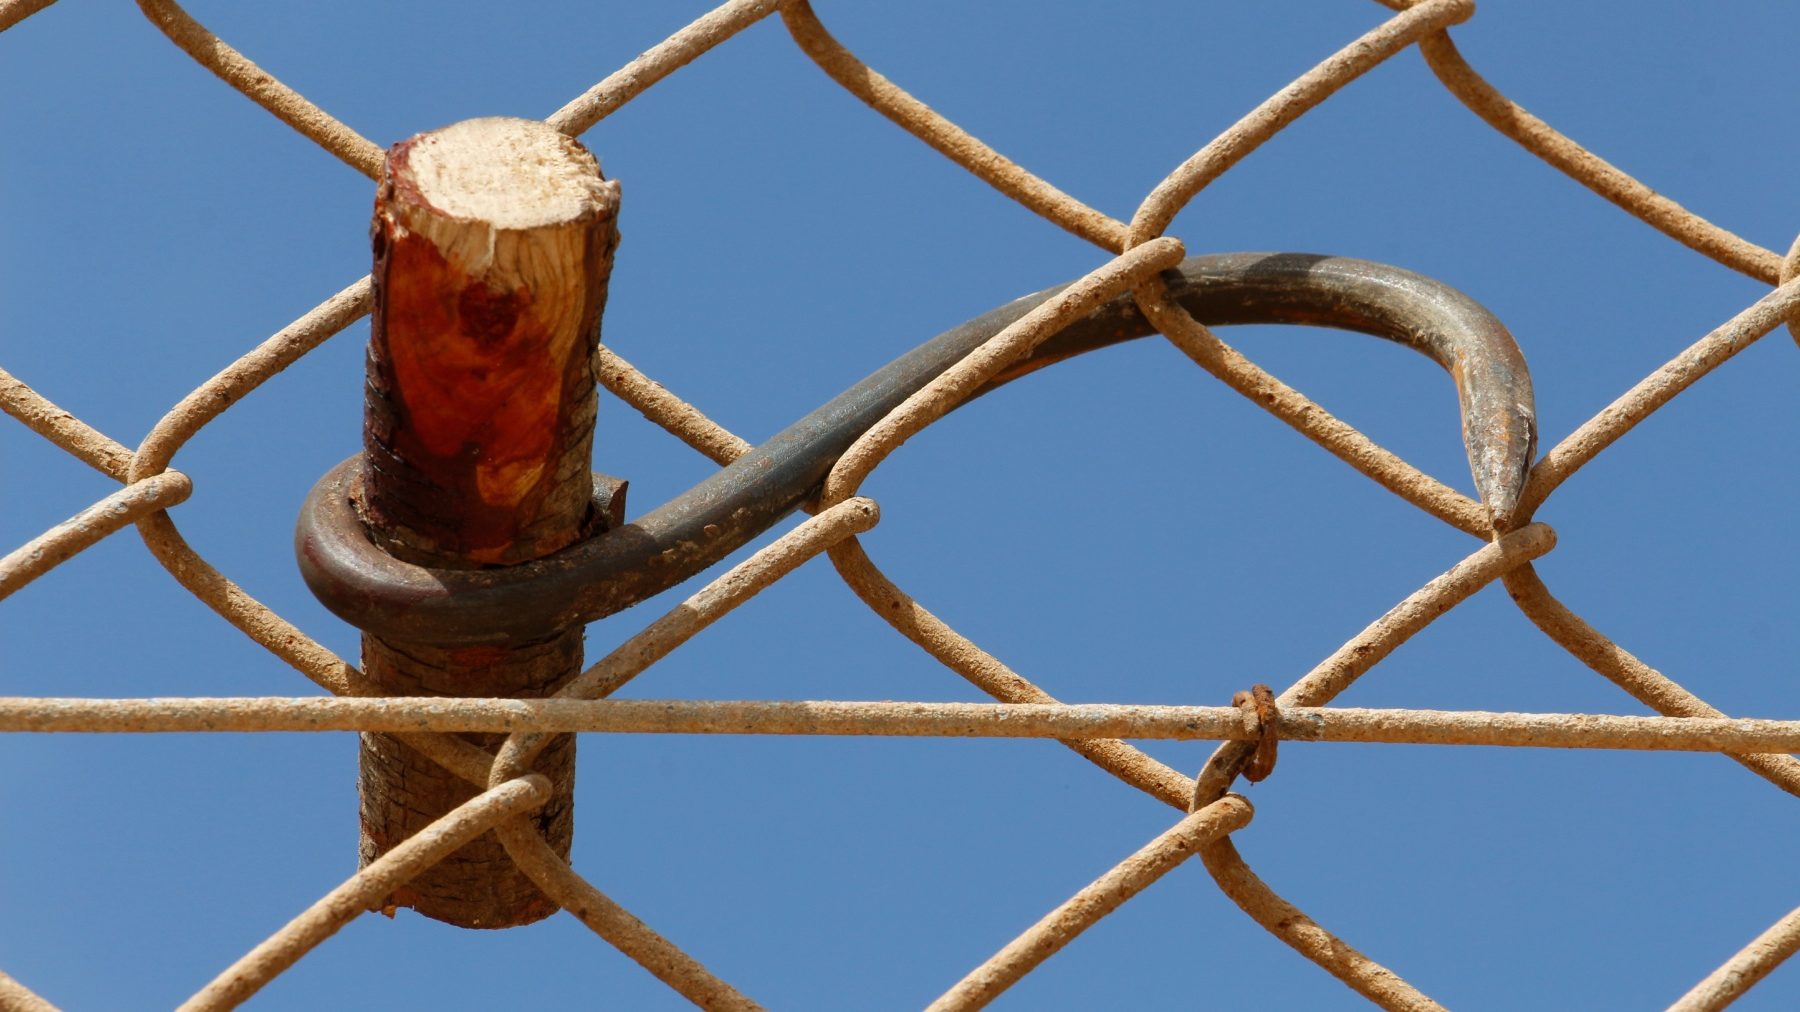 Un garfio empleado por inmigrantes ilegales pende de la valla de Melilla (EUROPA PRESS).